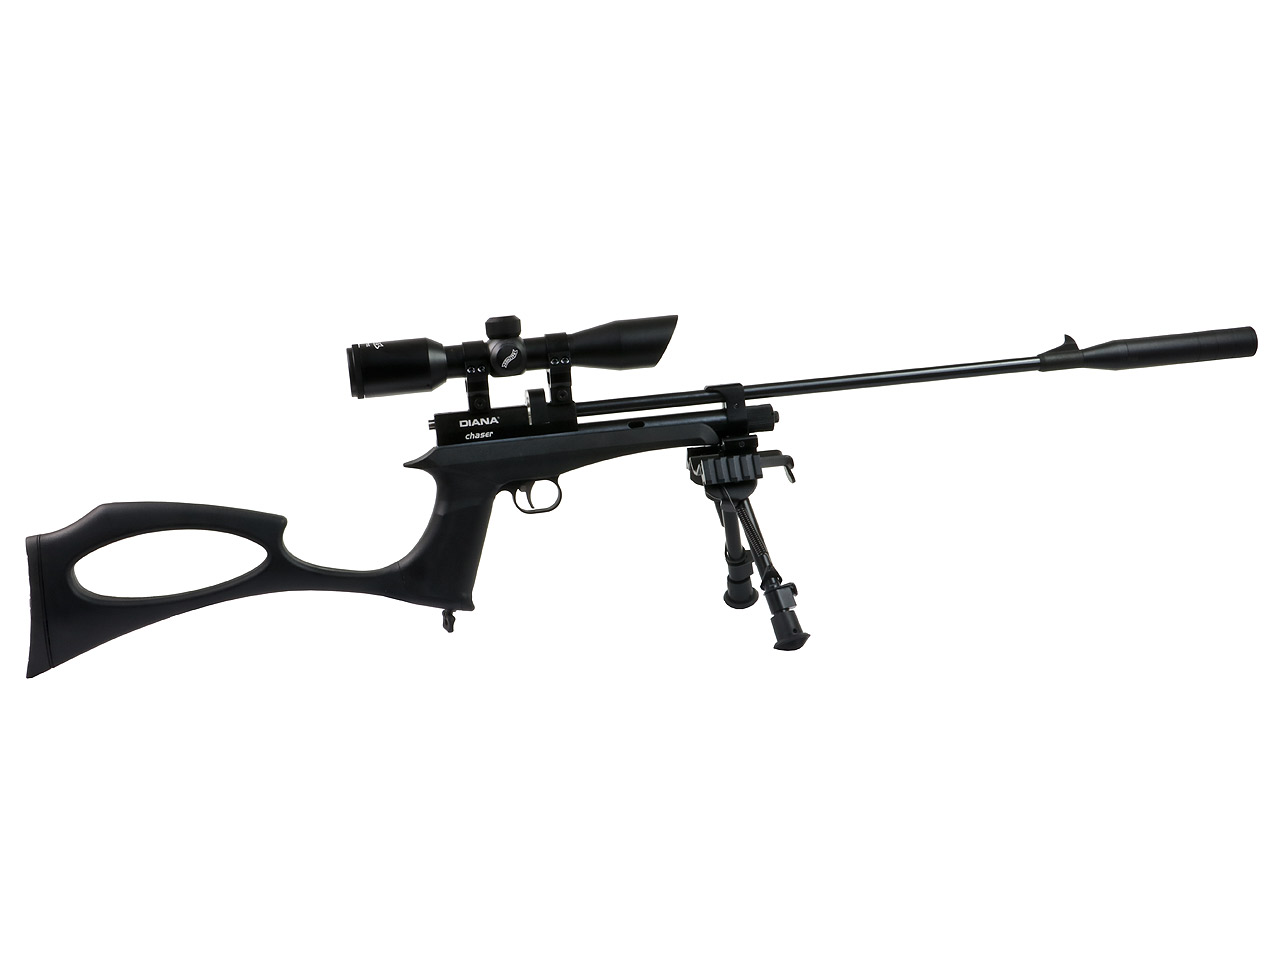 CO2 Pistole und Gewehr Diana Chaser Rifle Bipod Set Schalldämpfer Zielfernrohr 4x32 Zweibein 9 Schuss Trommelmagazin Kaliber 4,5 mm (P18)